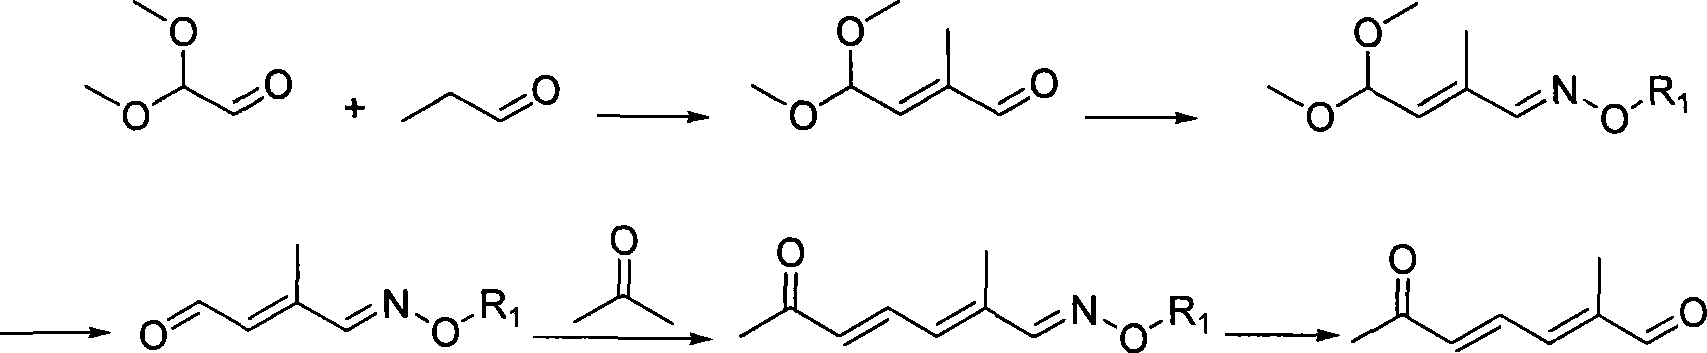 Method for preparing (2E,4E)-2-methyl-6-oxo-2,4-heptadienal